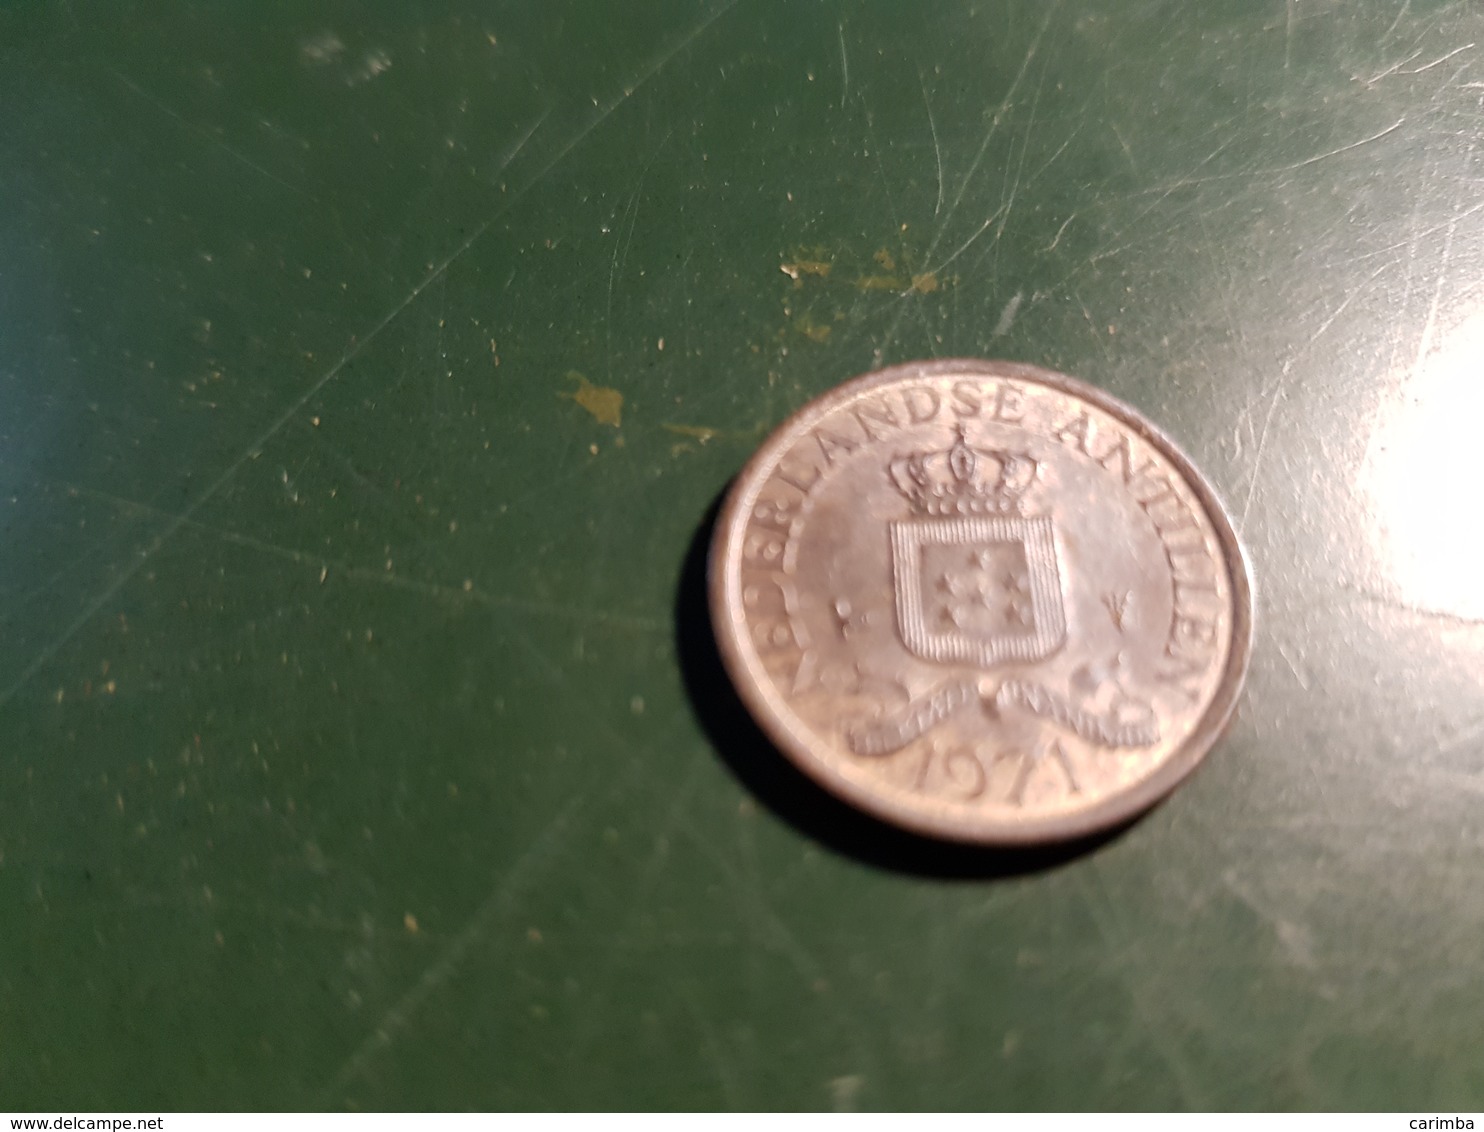 1 Cent 1971 - Niederländische Antillen